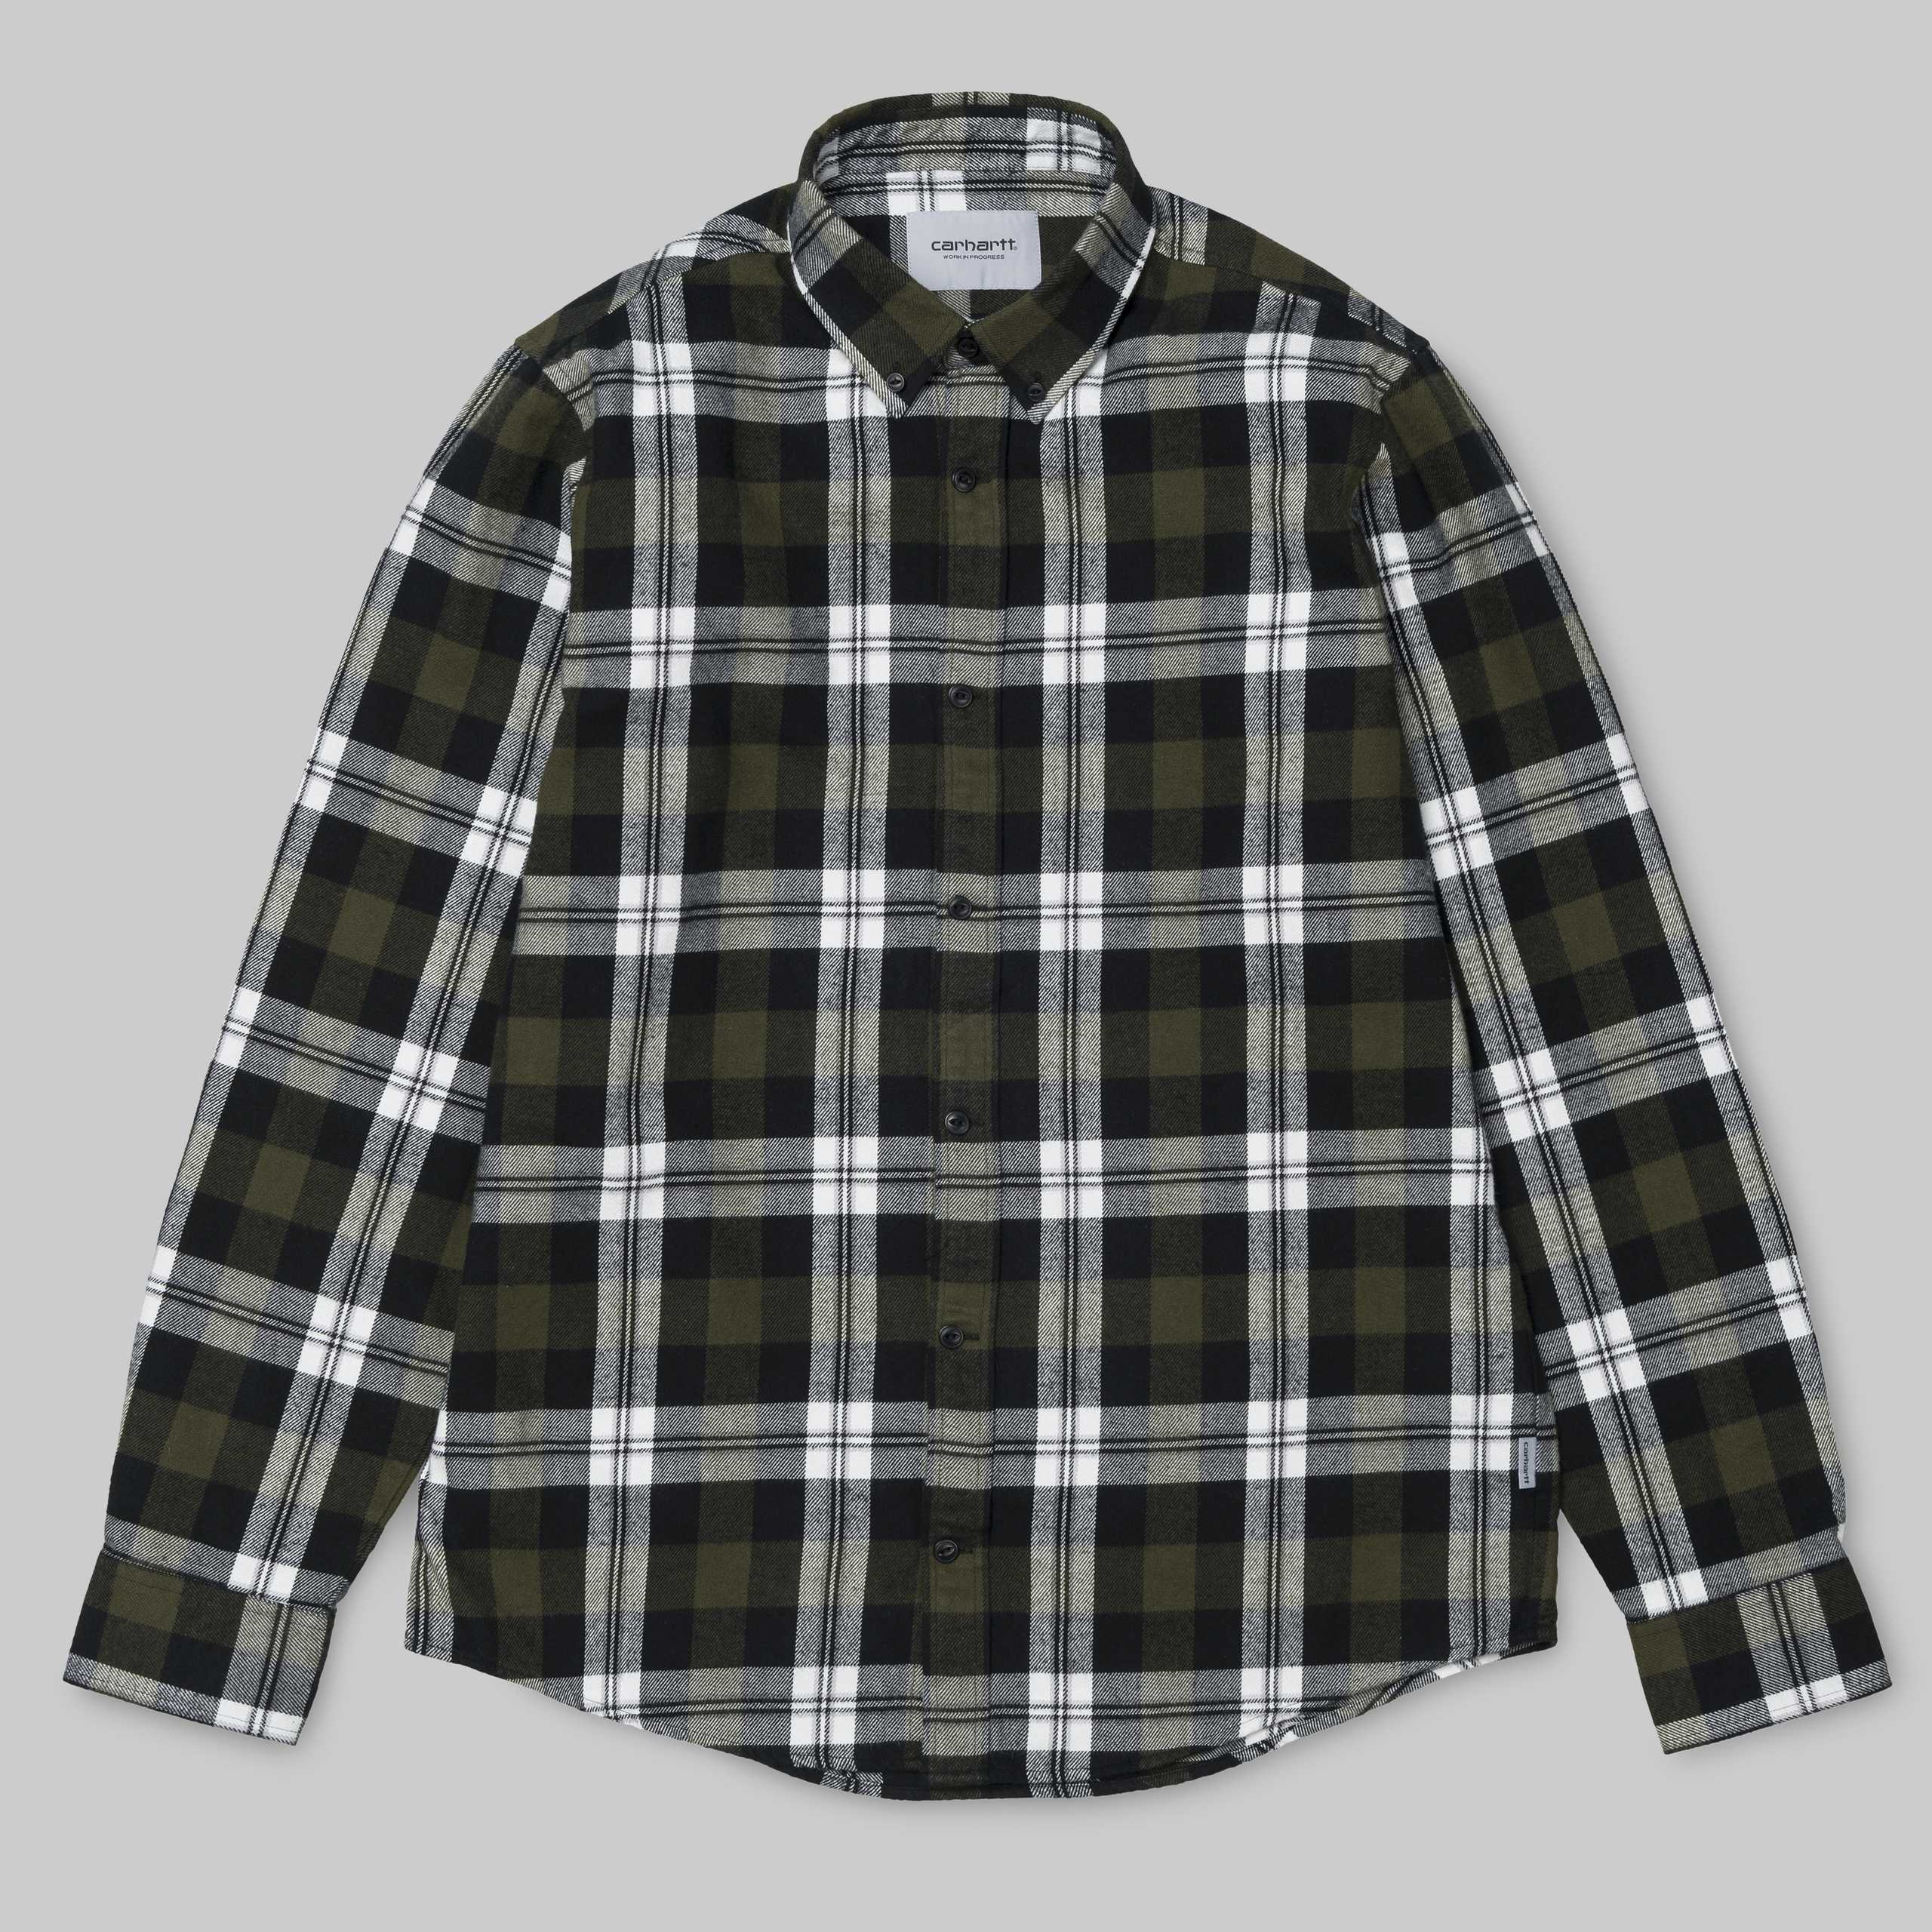 Carhartt L/S Lessing Shirt 100% Cotton Twill Flannel, 6.9 oz M L XL